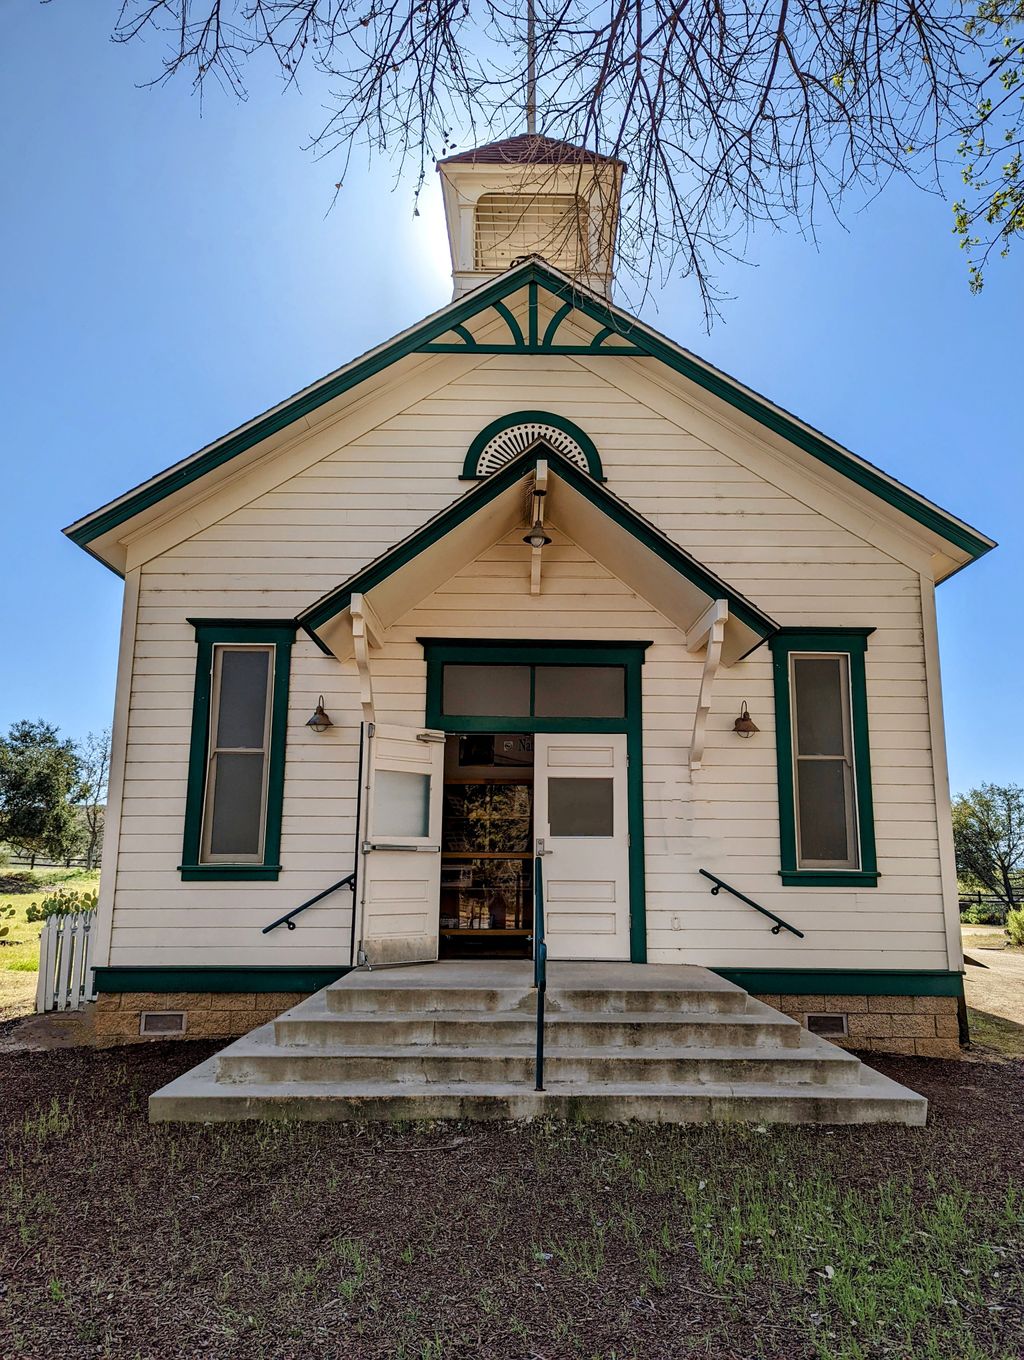 Alamos Schoolhouse/Nature Center